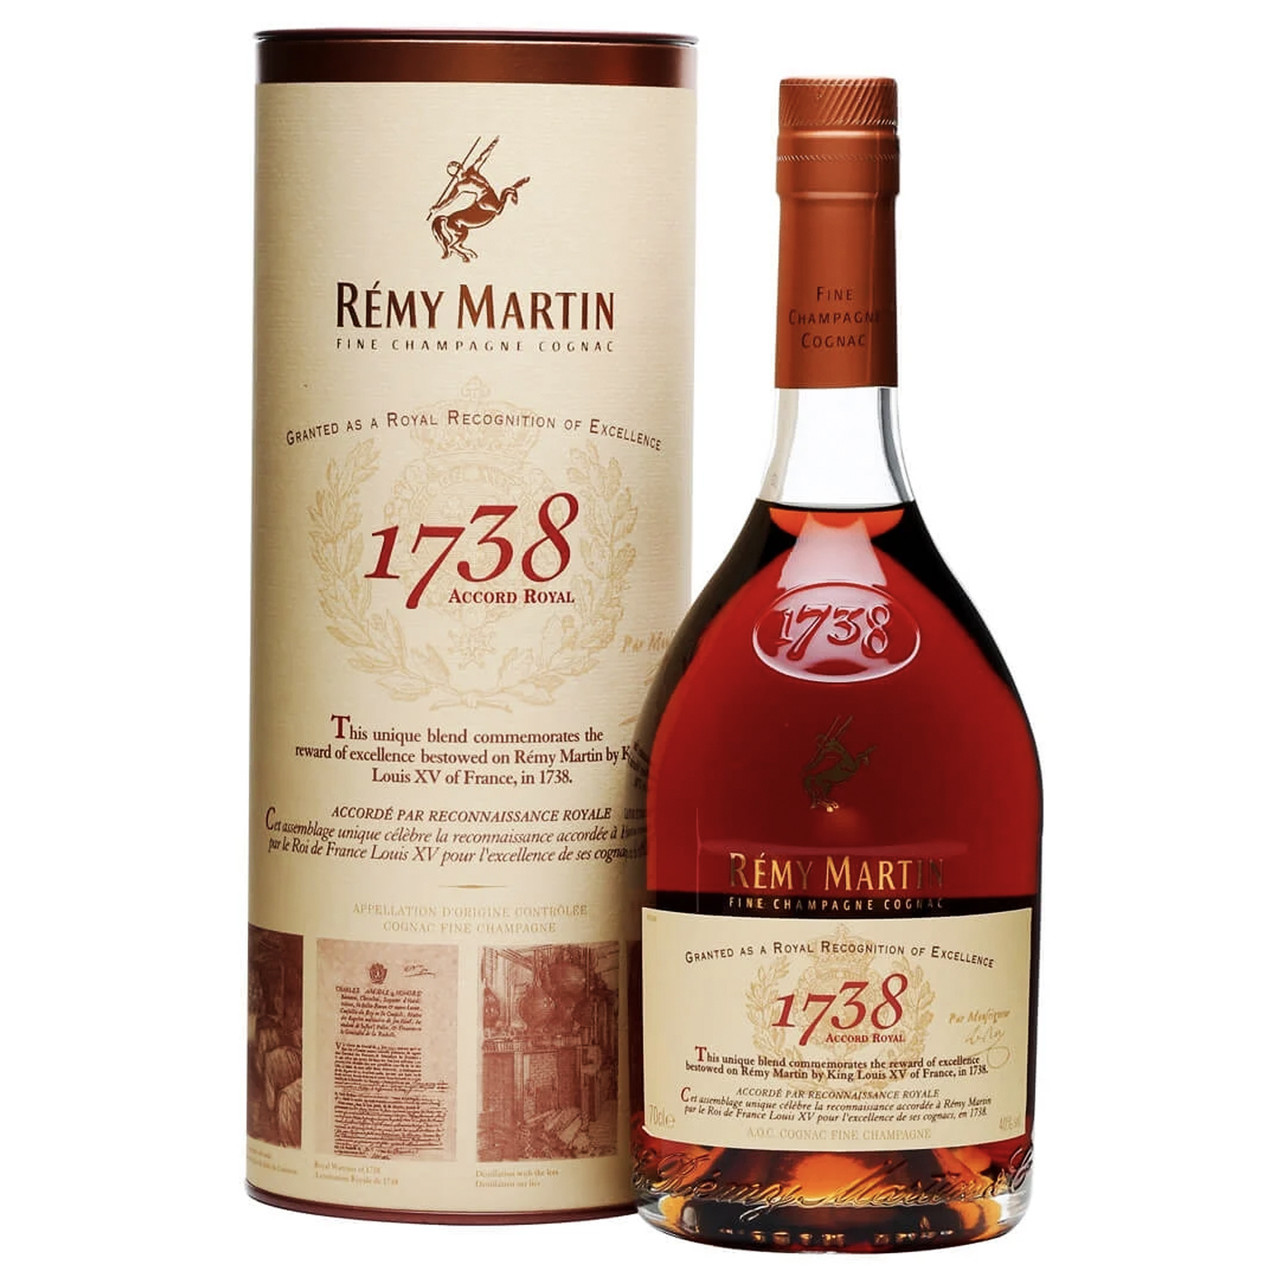 Rémy Martin Cognac Royale 1738 750mL Accord